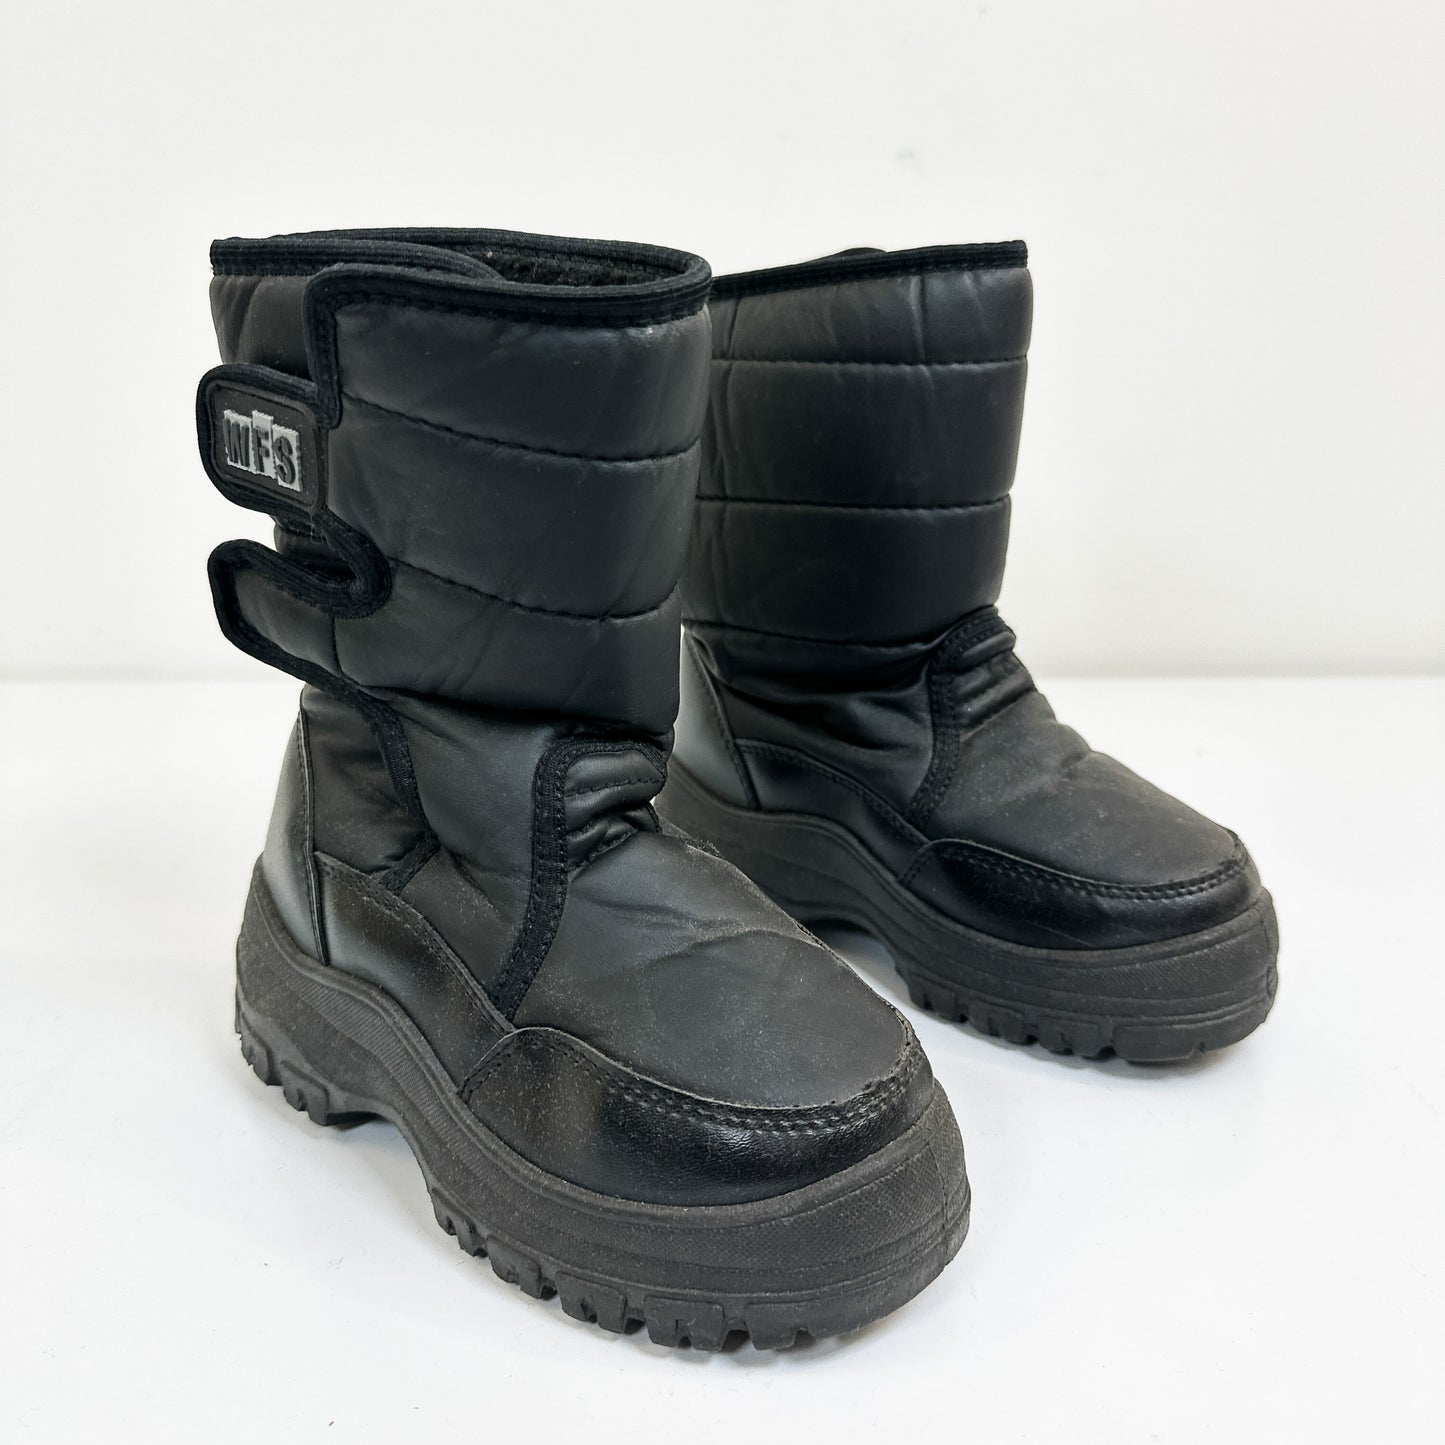 Vintage Kids Snow Boots - Size 13